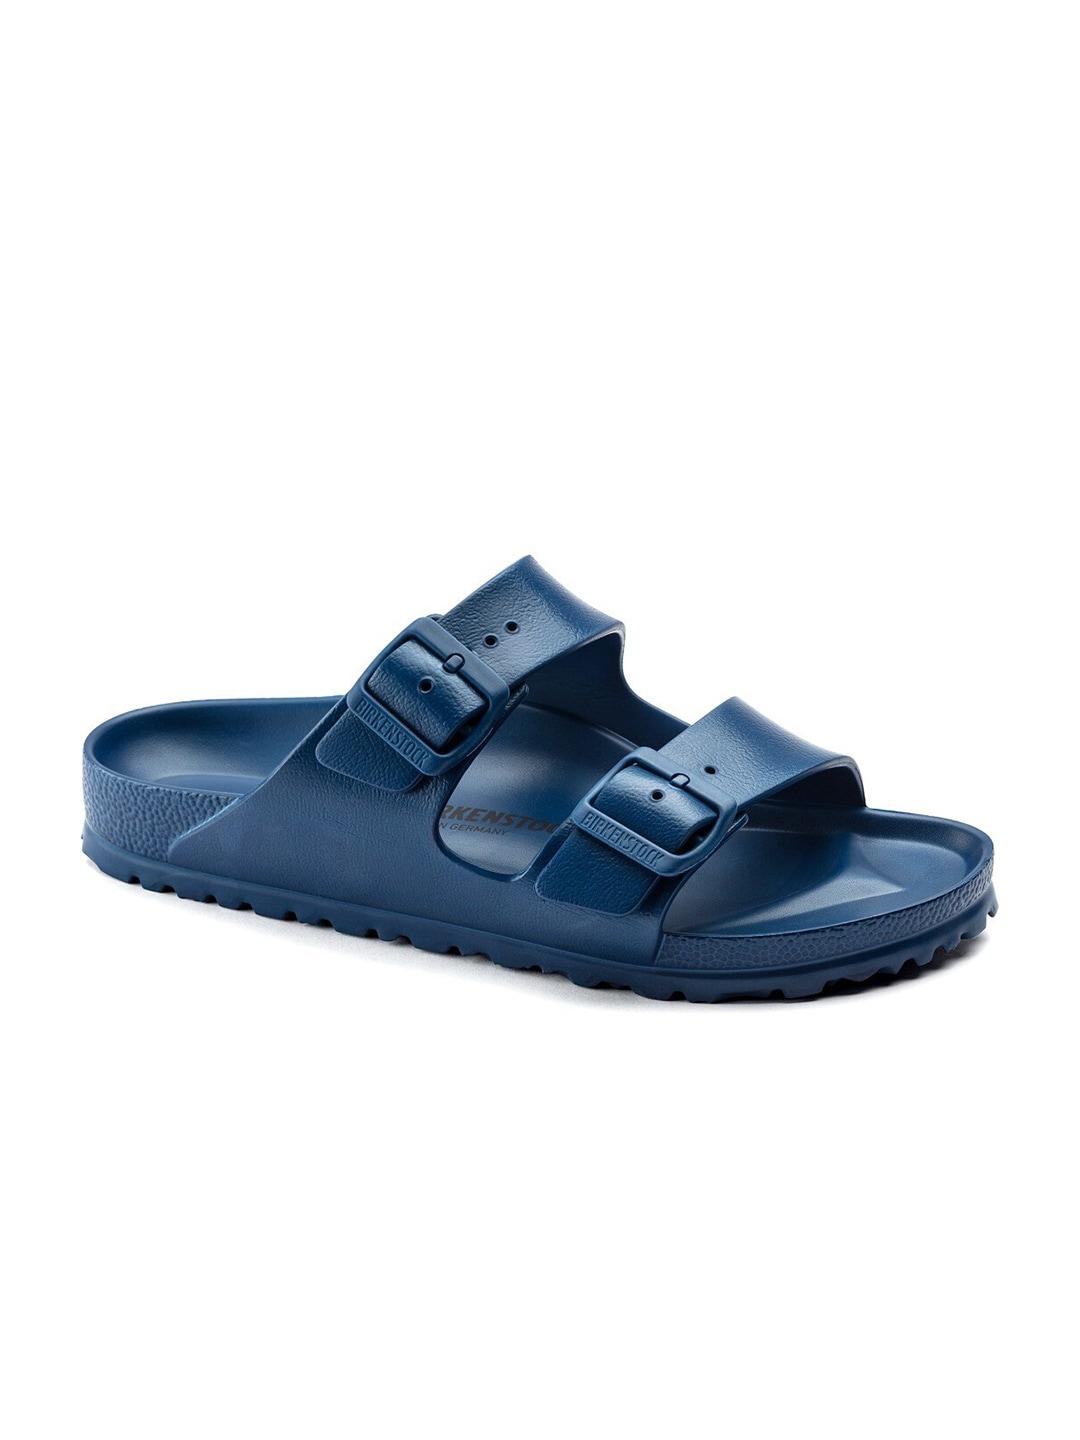 birkenstock-unisex-blue-comfort-sandals